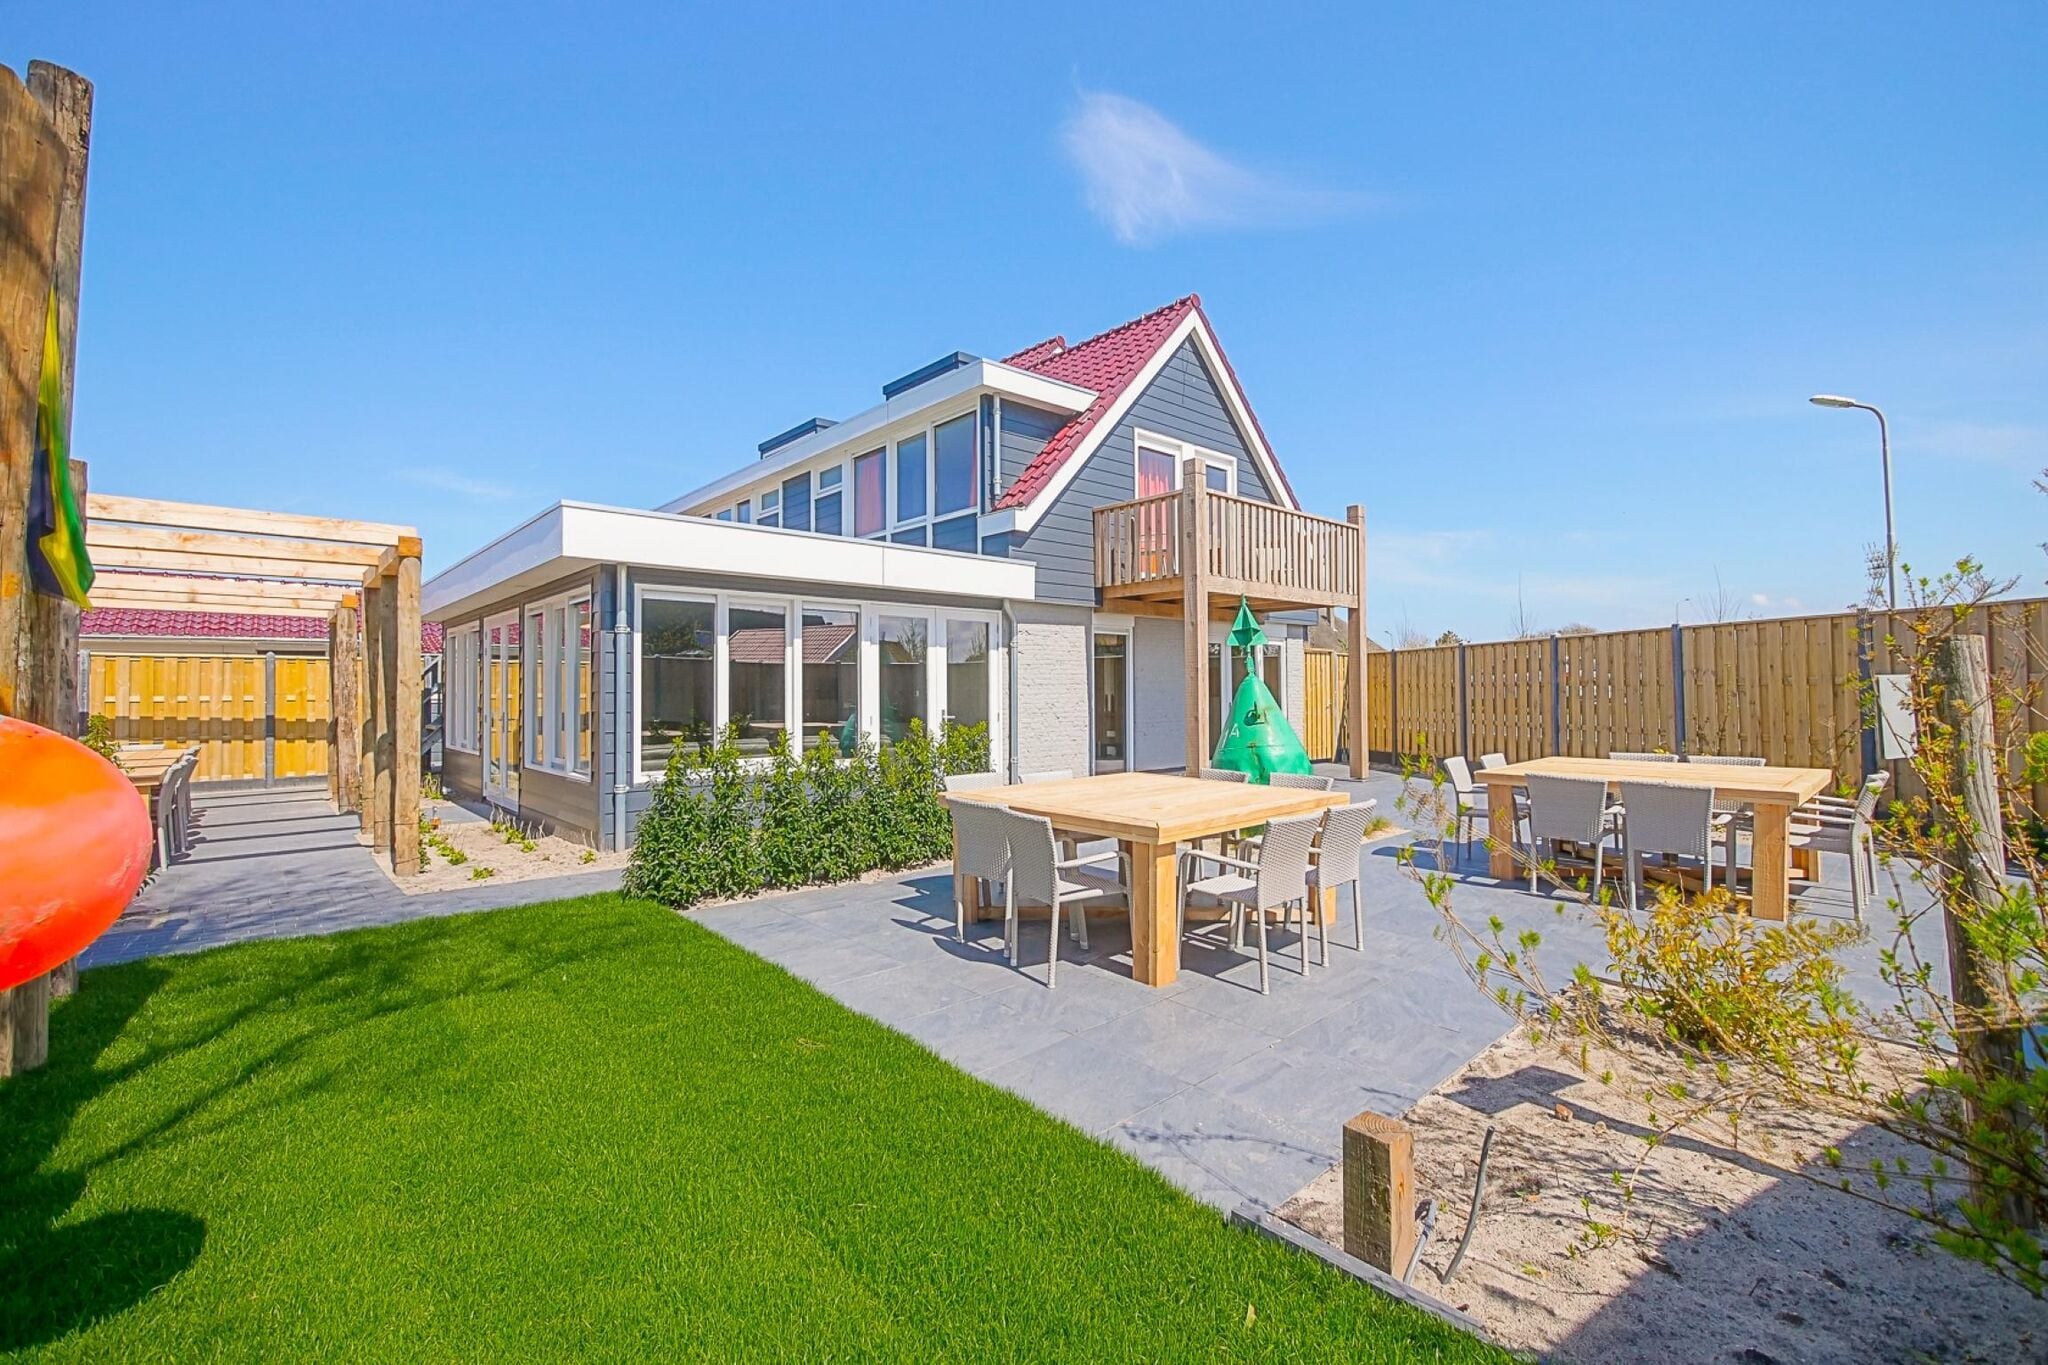 Jolie maison de vacances à Callantsoog avec jardin clôturé